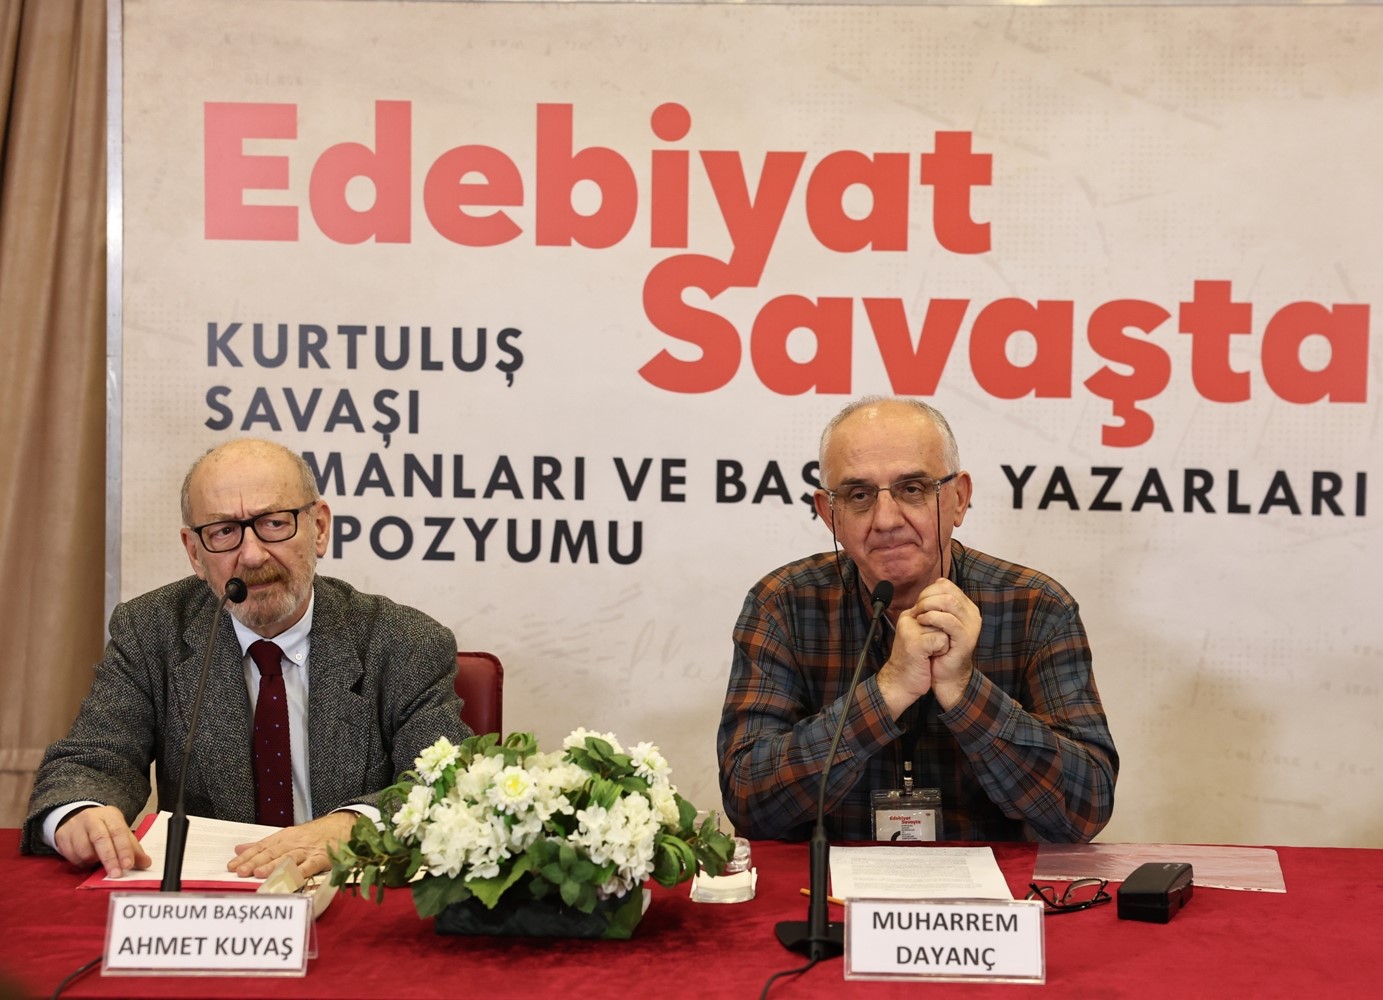 Kurtuluş Savaşı’nın Türk Edebiyatı’na yansımaları bu sempozyumda ele alınıyor